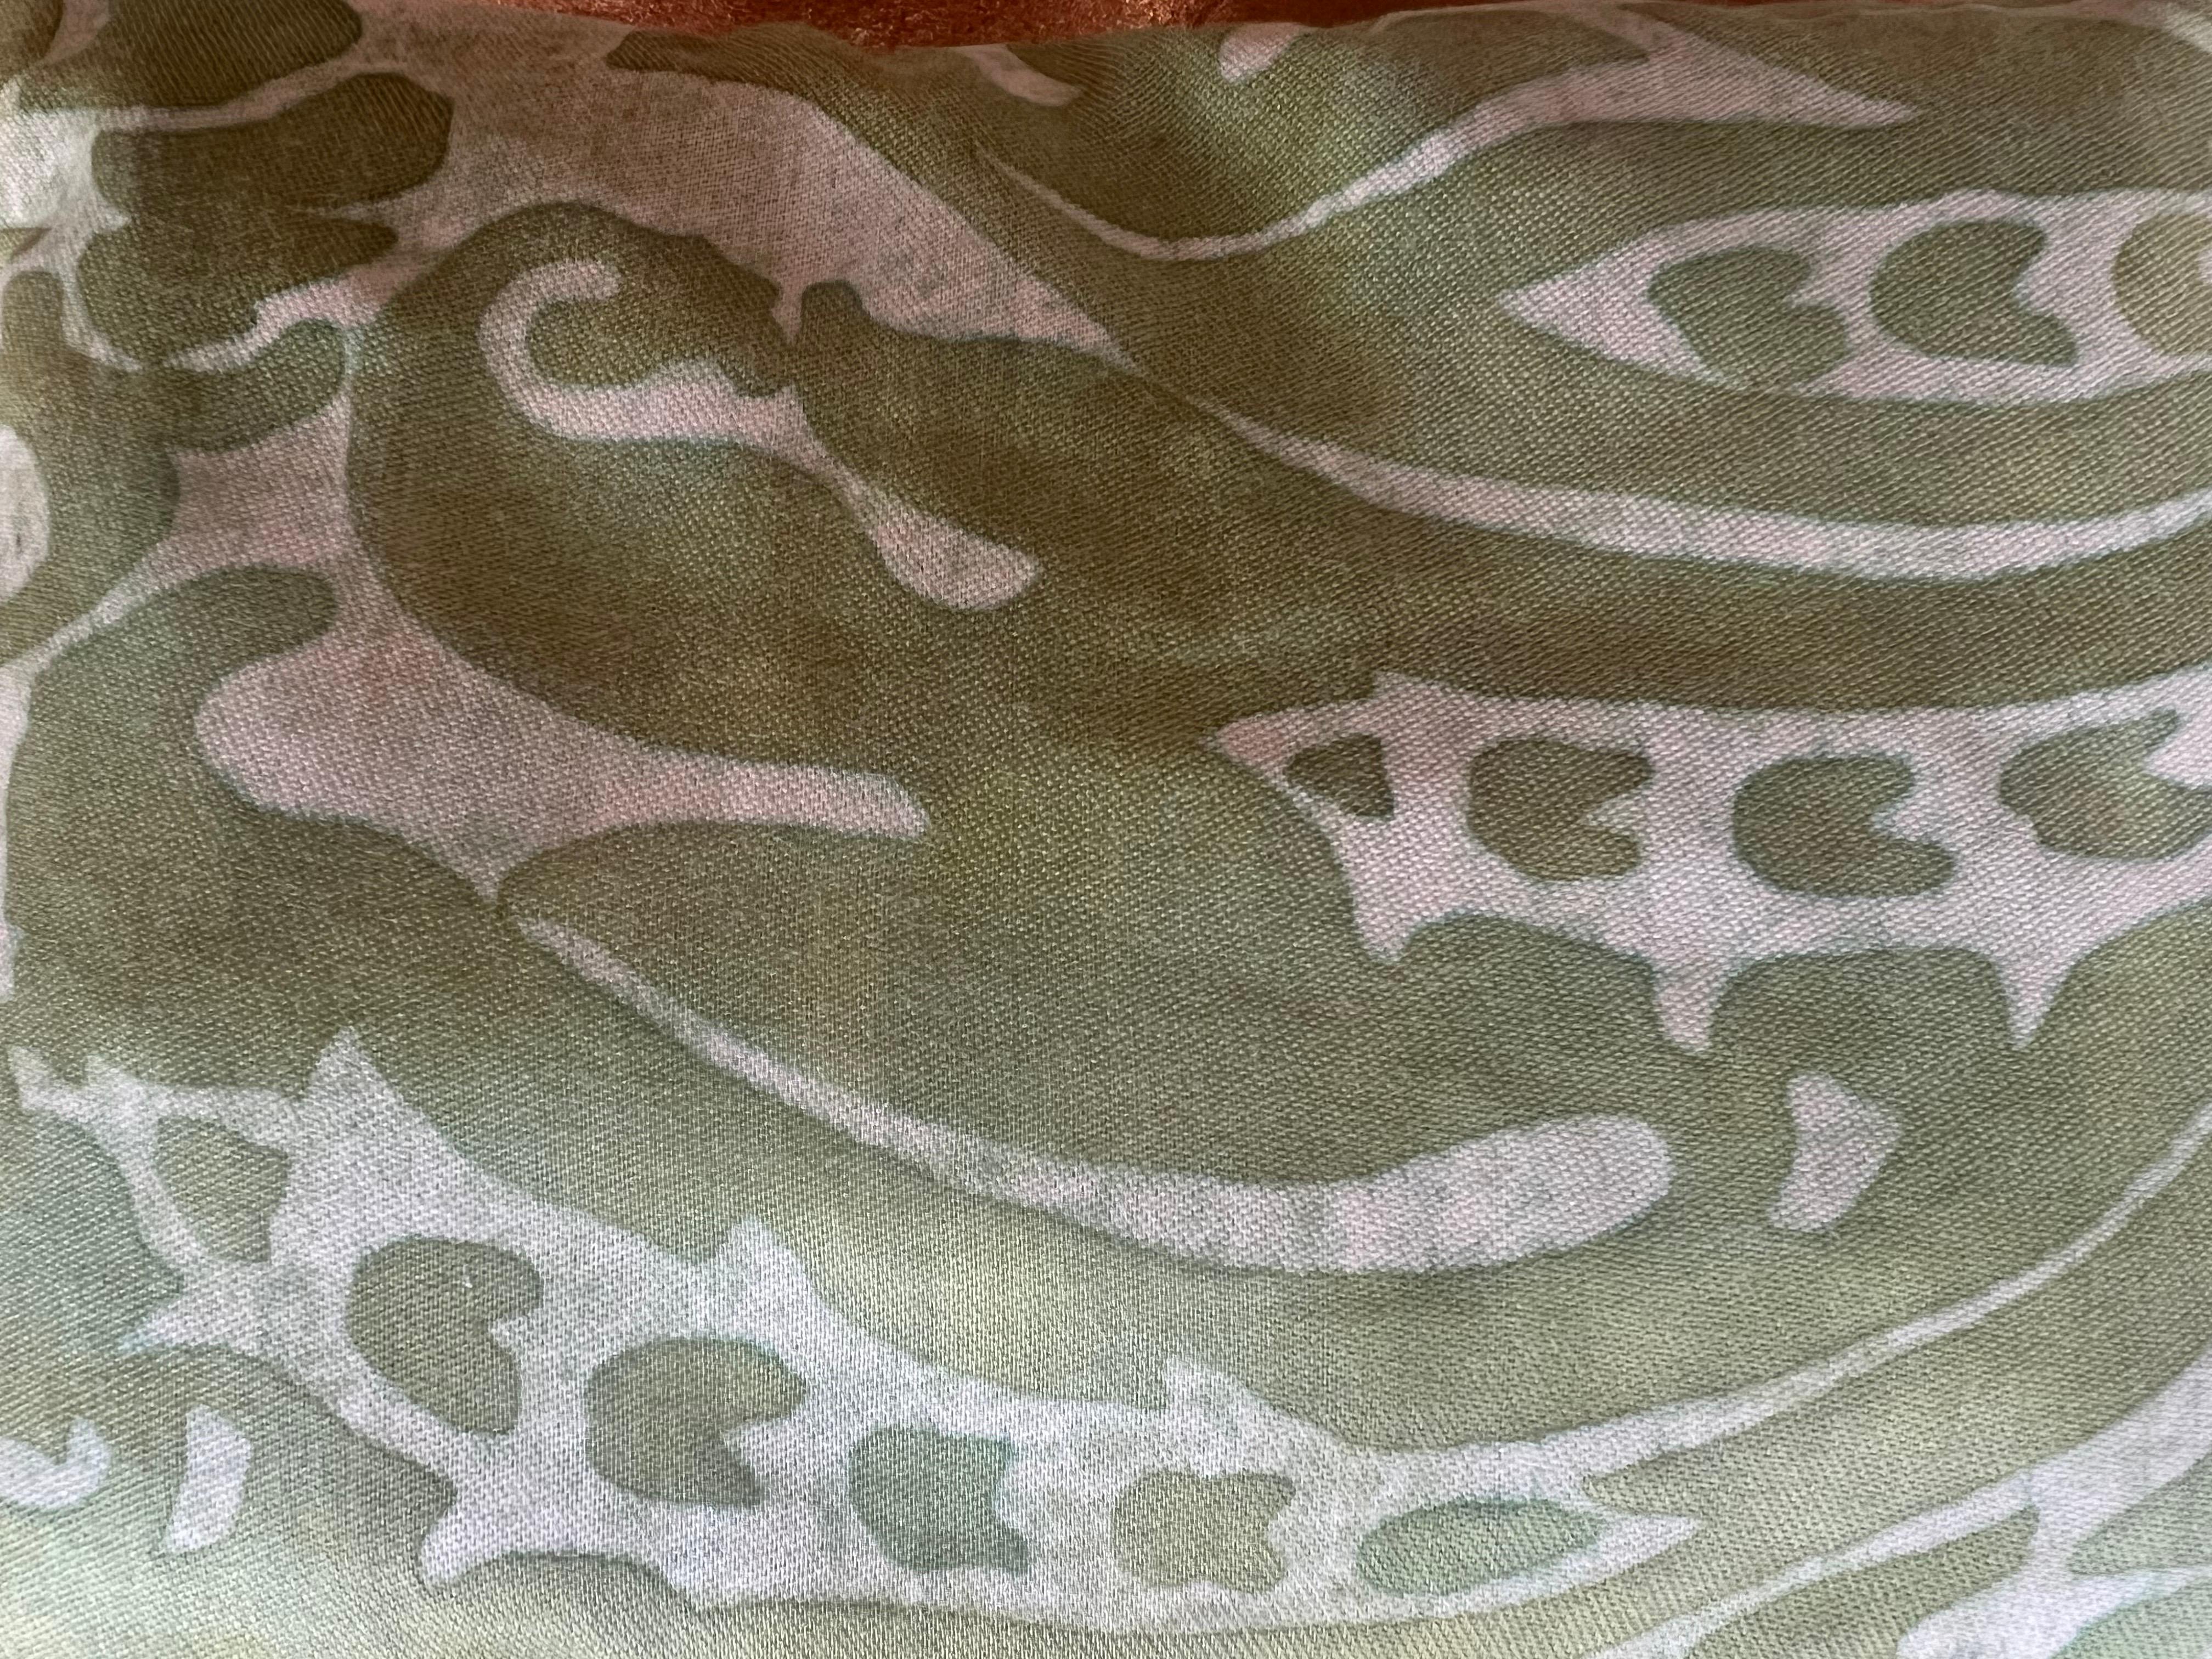 Un sachet rempli de lavande fabriqué avec le tissu de Mariano Fortuny. Il présente un motif vert doux, semblable à une aquarelle, sur un fond blanc, combinant à la fois l'attrait aromatique et l'attrait visuel